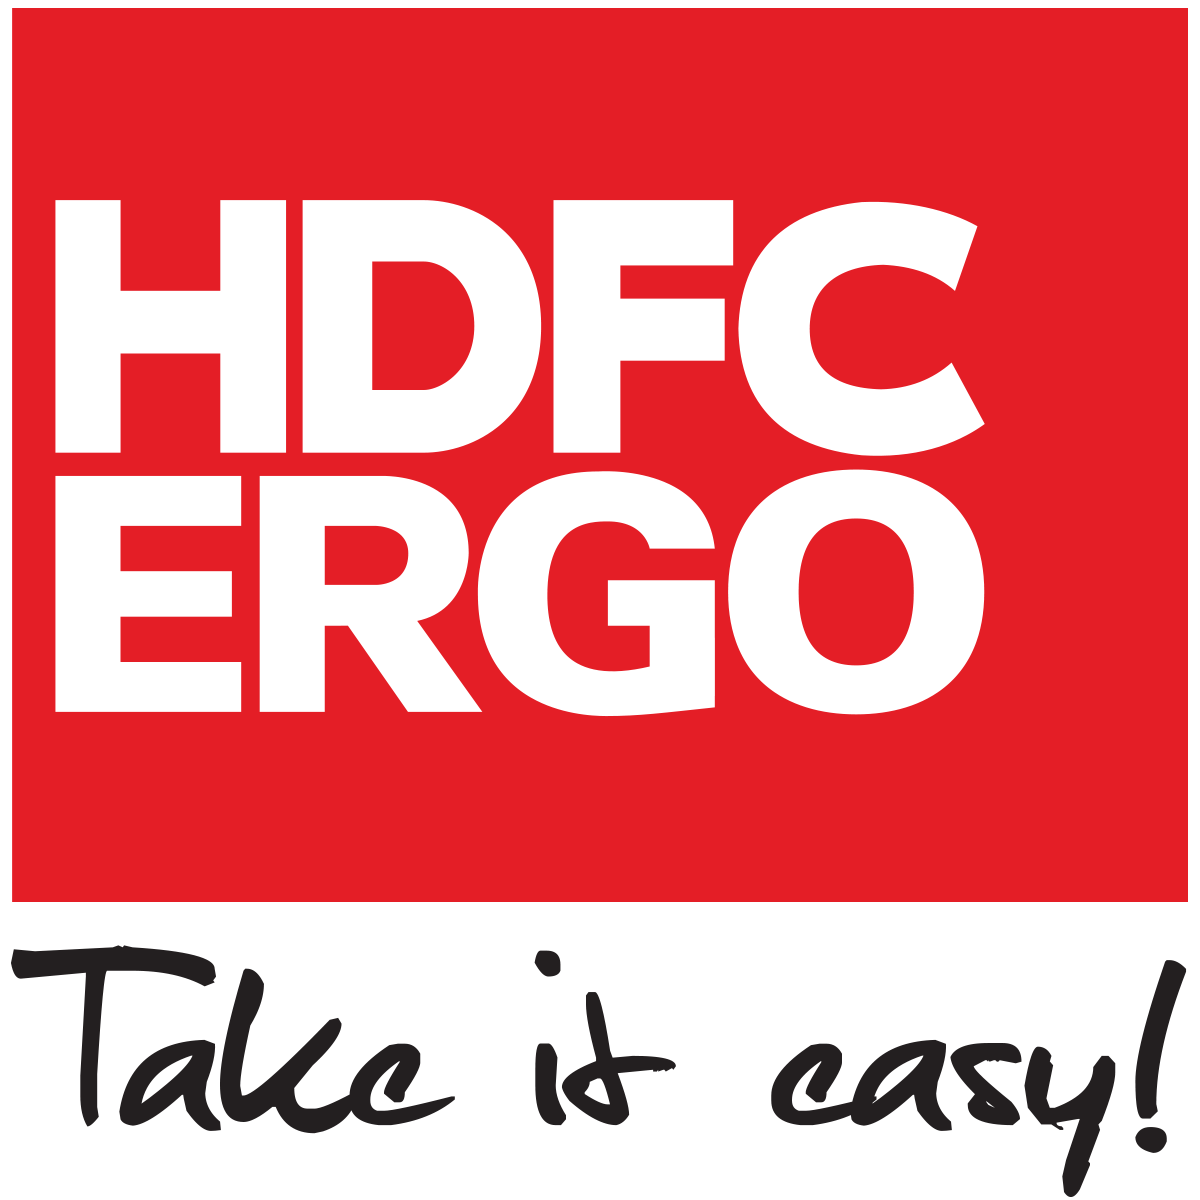 HDFC-Ergo-logo